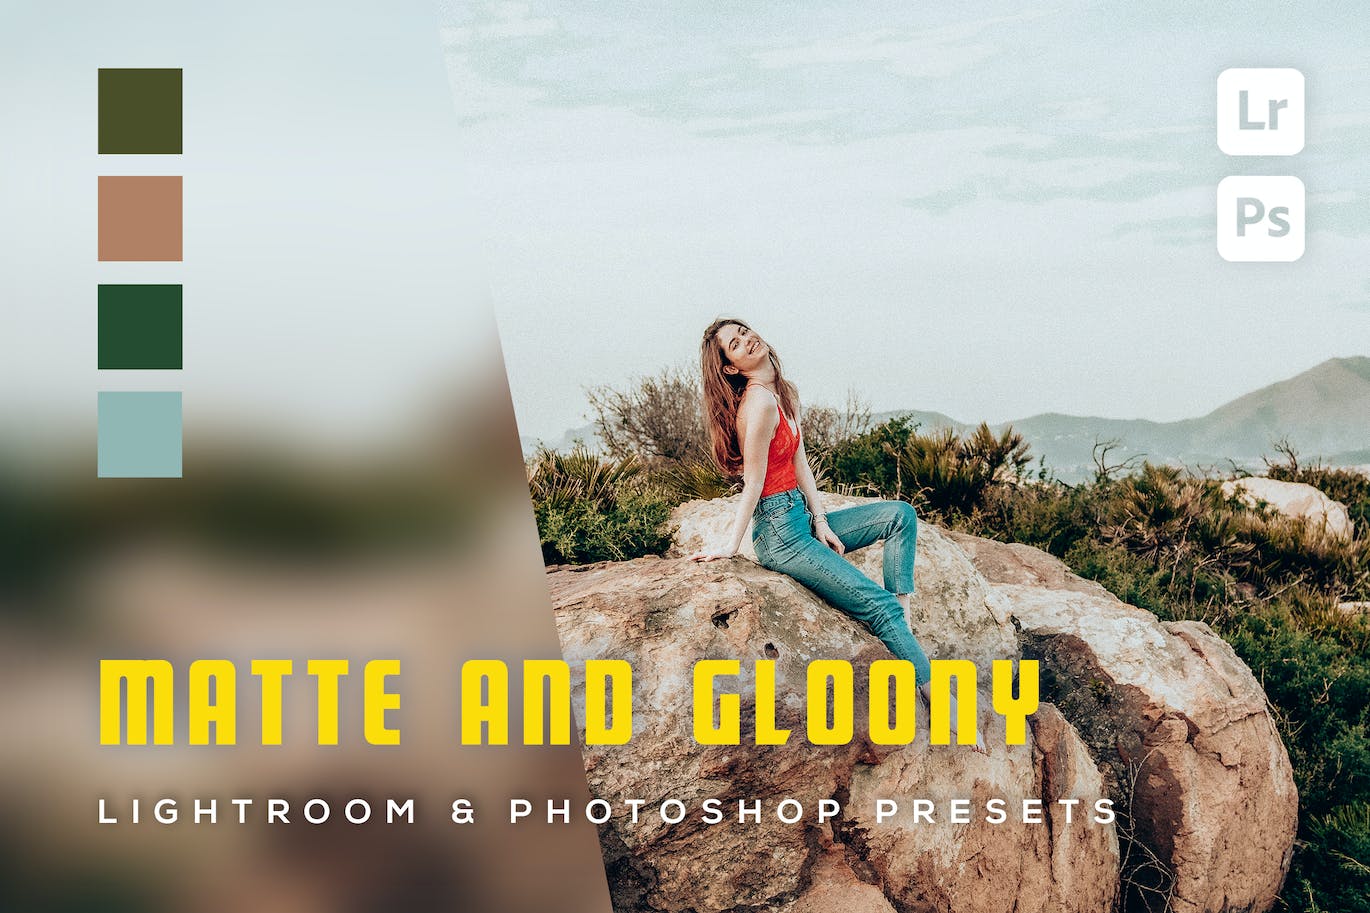 6 个哑光和忧郁照片效果 Lightroom 和 Photoshop 预设 6 Matte and gloony Lightroom and Photoshop Presets